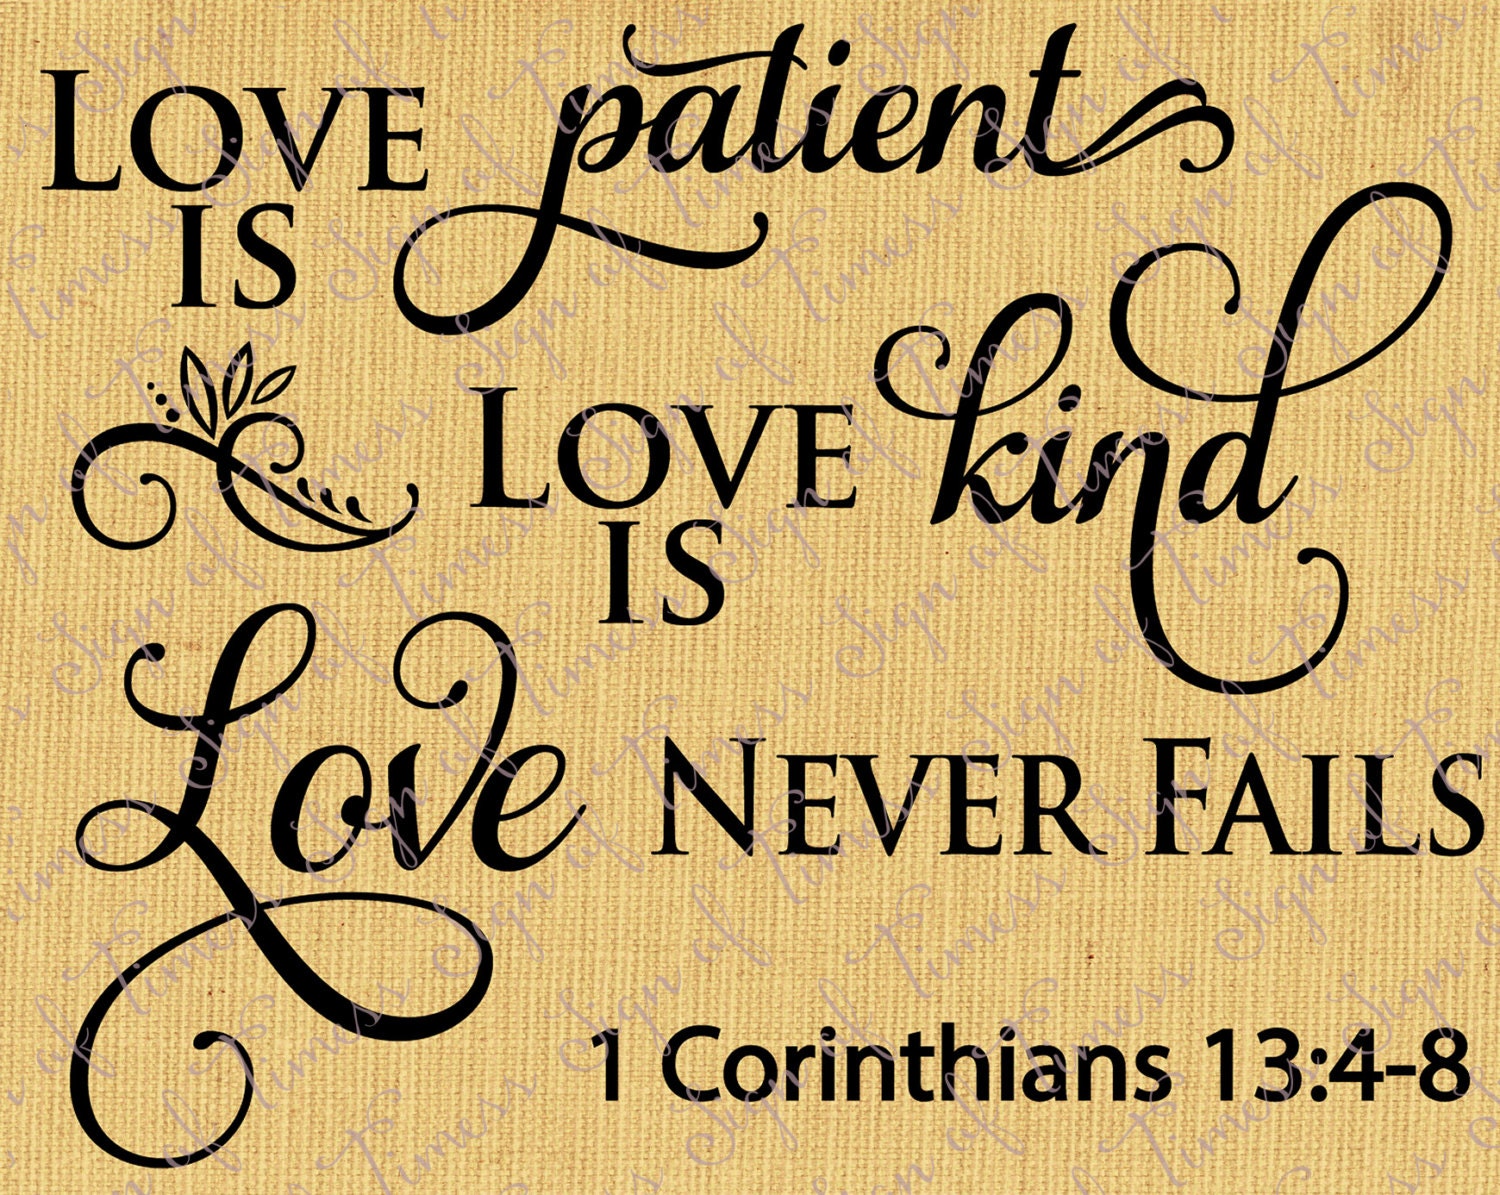 Love is Patient Love is Kind Corinthians 13:4-8 Valentine